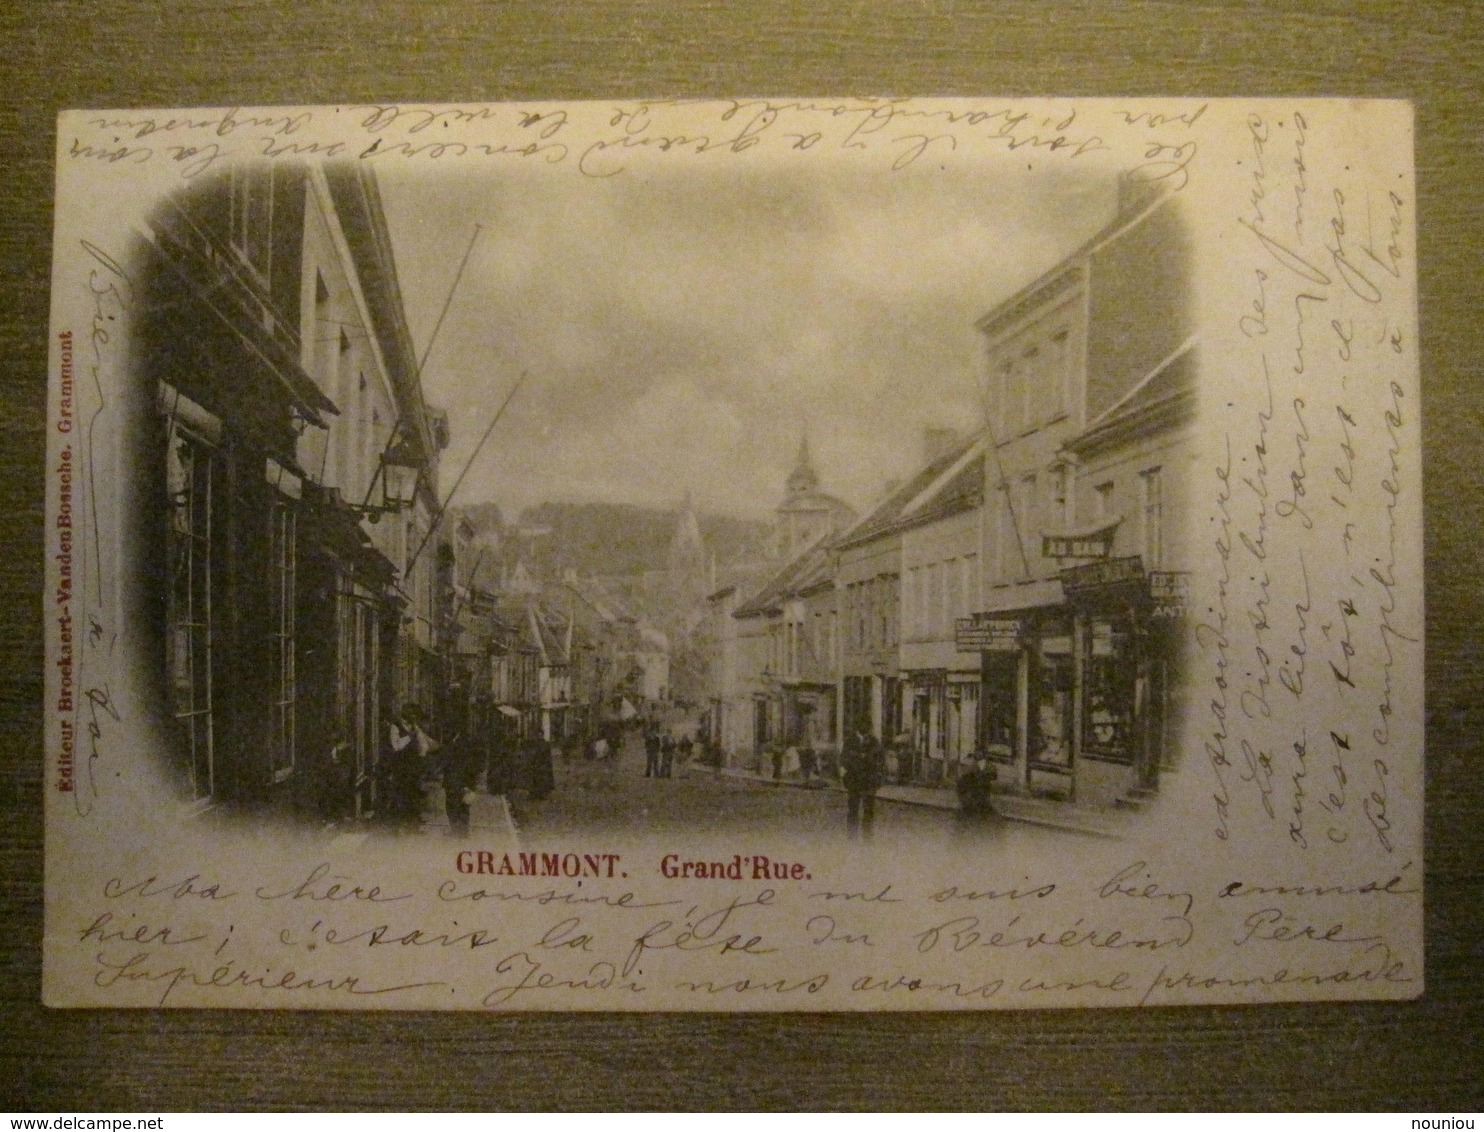 Cpa Grammont Geraardsbergen - Grand' Rue - Edit. Broekaert Vanden Bossche - 1902 - Geraardsbergen